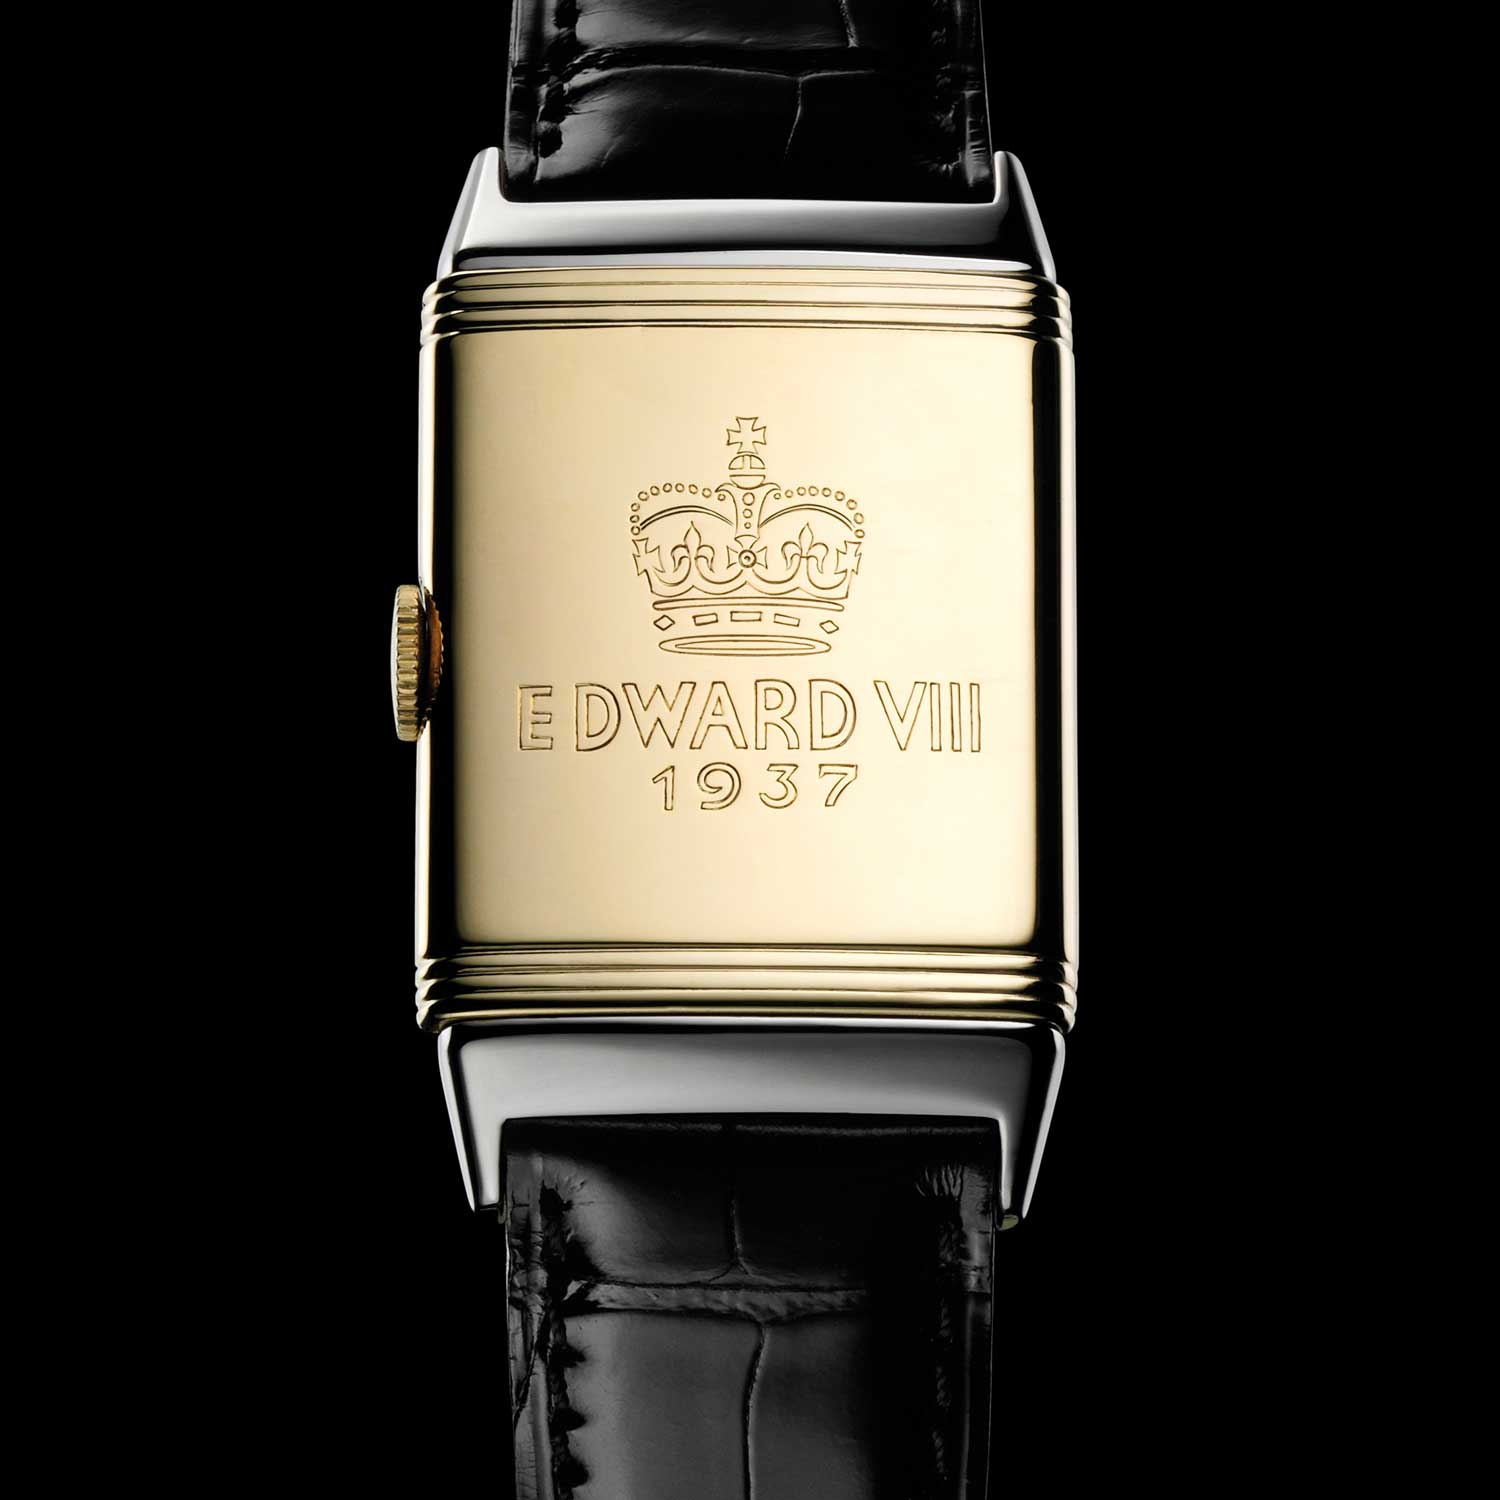 Đồng hồ của Edward VIII được khắc hơi sớm - vào năm 1937, ông không còn là Vua, chỉ đơn thuần là Công tước của Windsor.